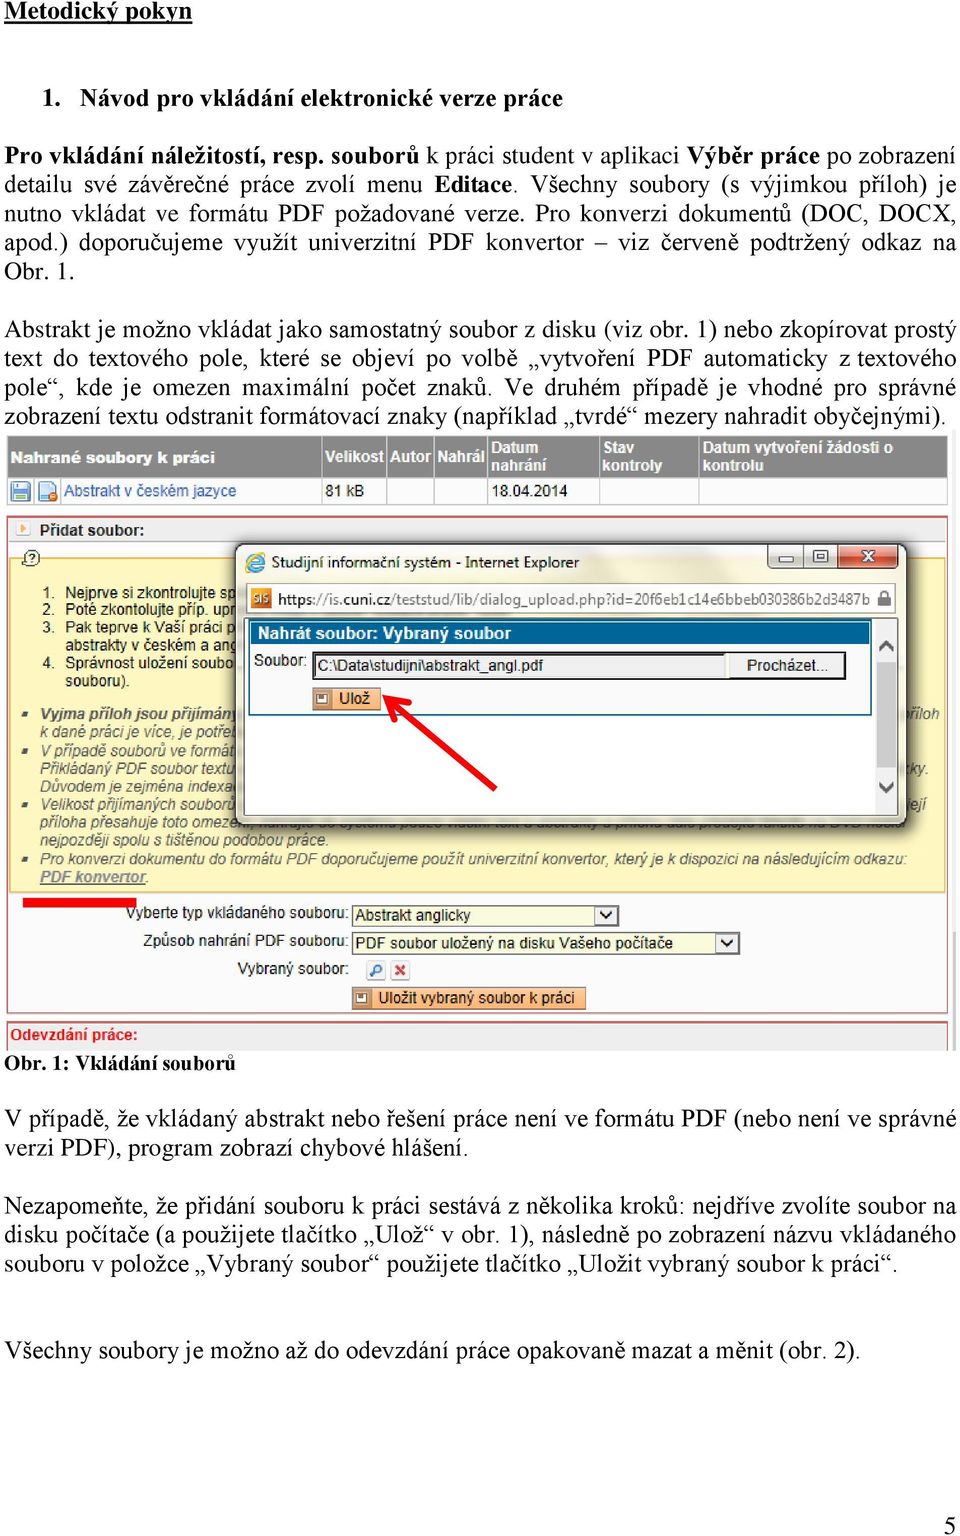 Pro konverzi dokumentů (DOC, DOCX, apod.) doporučujeme využít univerzitní PDF konvertor viz červeně podtržený odkaz na Obr. 1. Abstrakt je možno vkládat jako samostatný soubor z disku (viz obr.